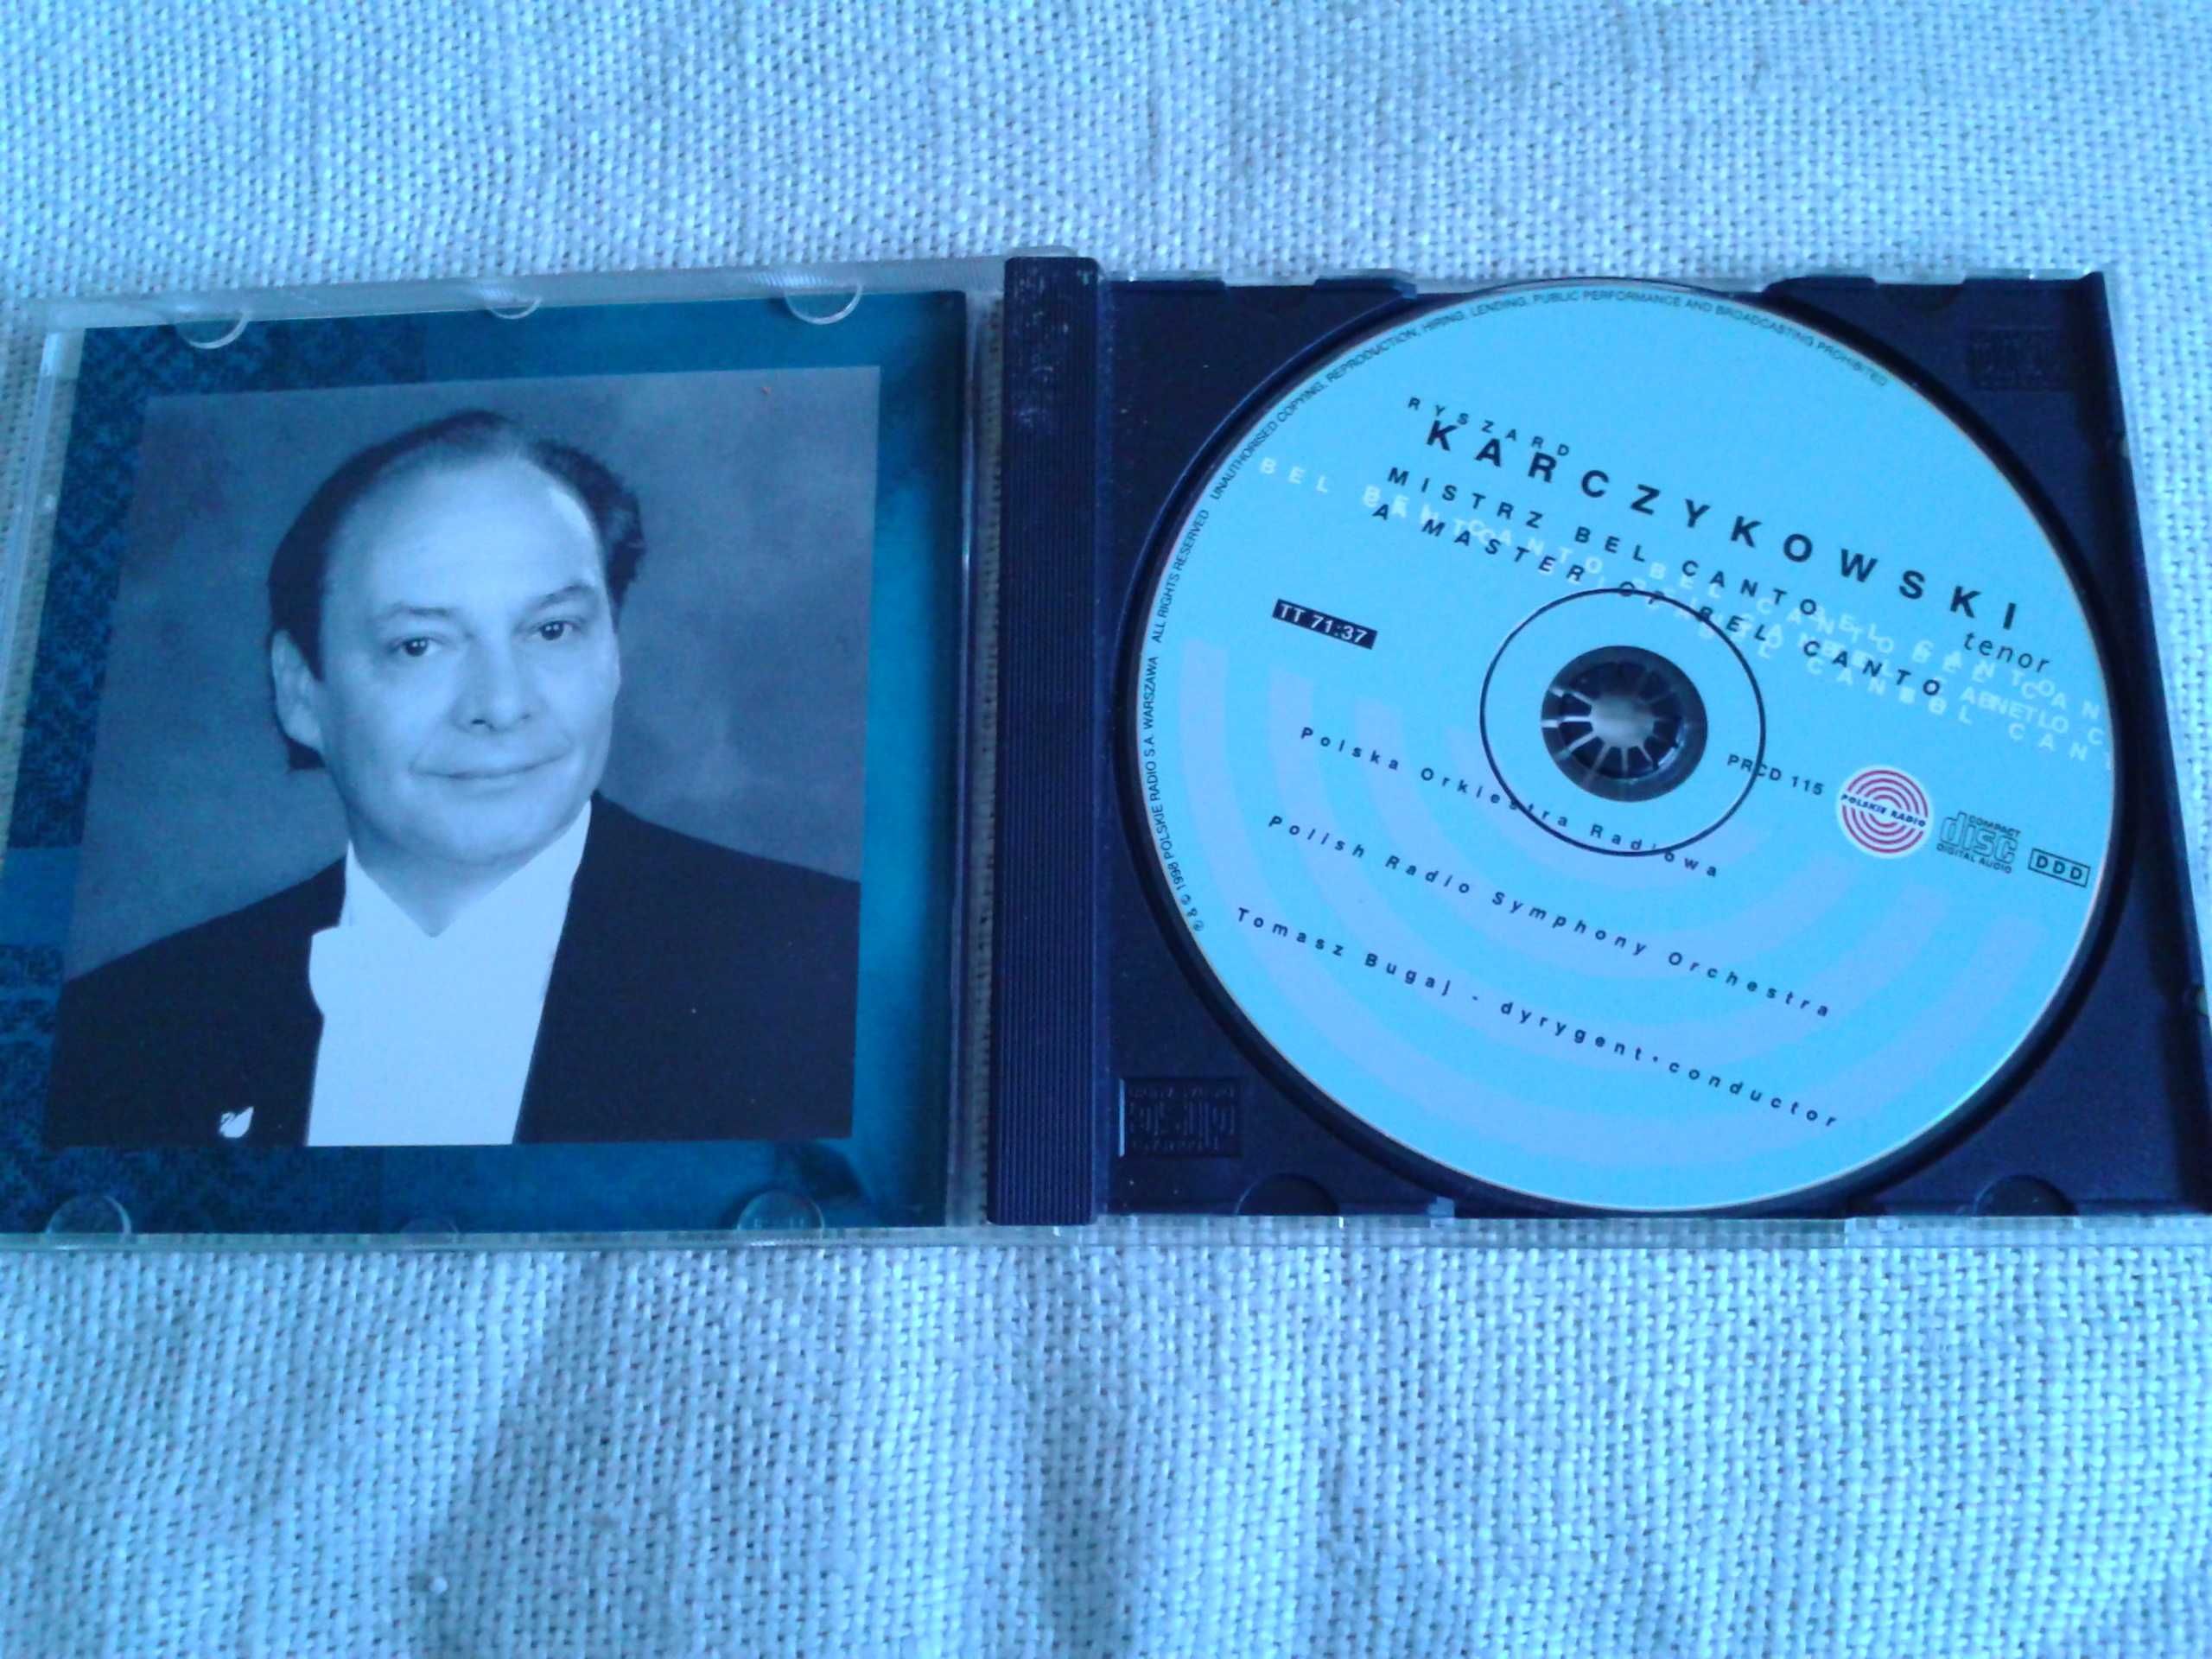 Ryszard Karczykowski - Mistrz bel canto  CD